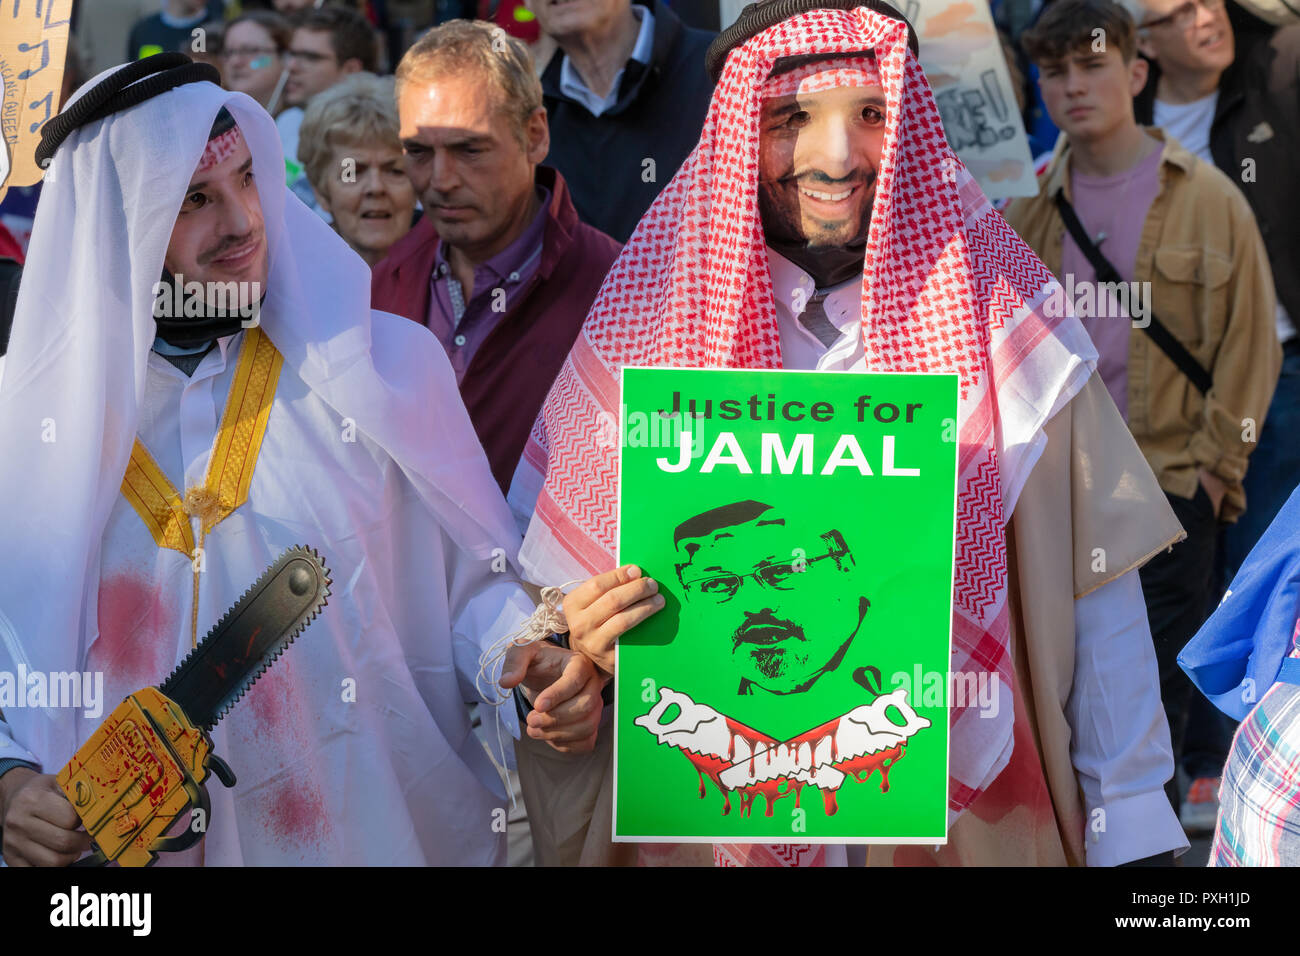 Whitehall, London, England, 20. Oktober 2018; zwei Männer mit Gesichtsmasken und im Nahen und Mittleren Osten Kleidung demonstrieren gegen die Tötung von Jamal Khashoggi Stockfoto